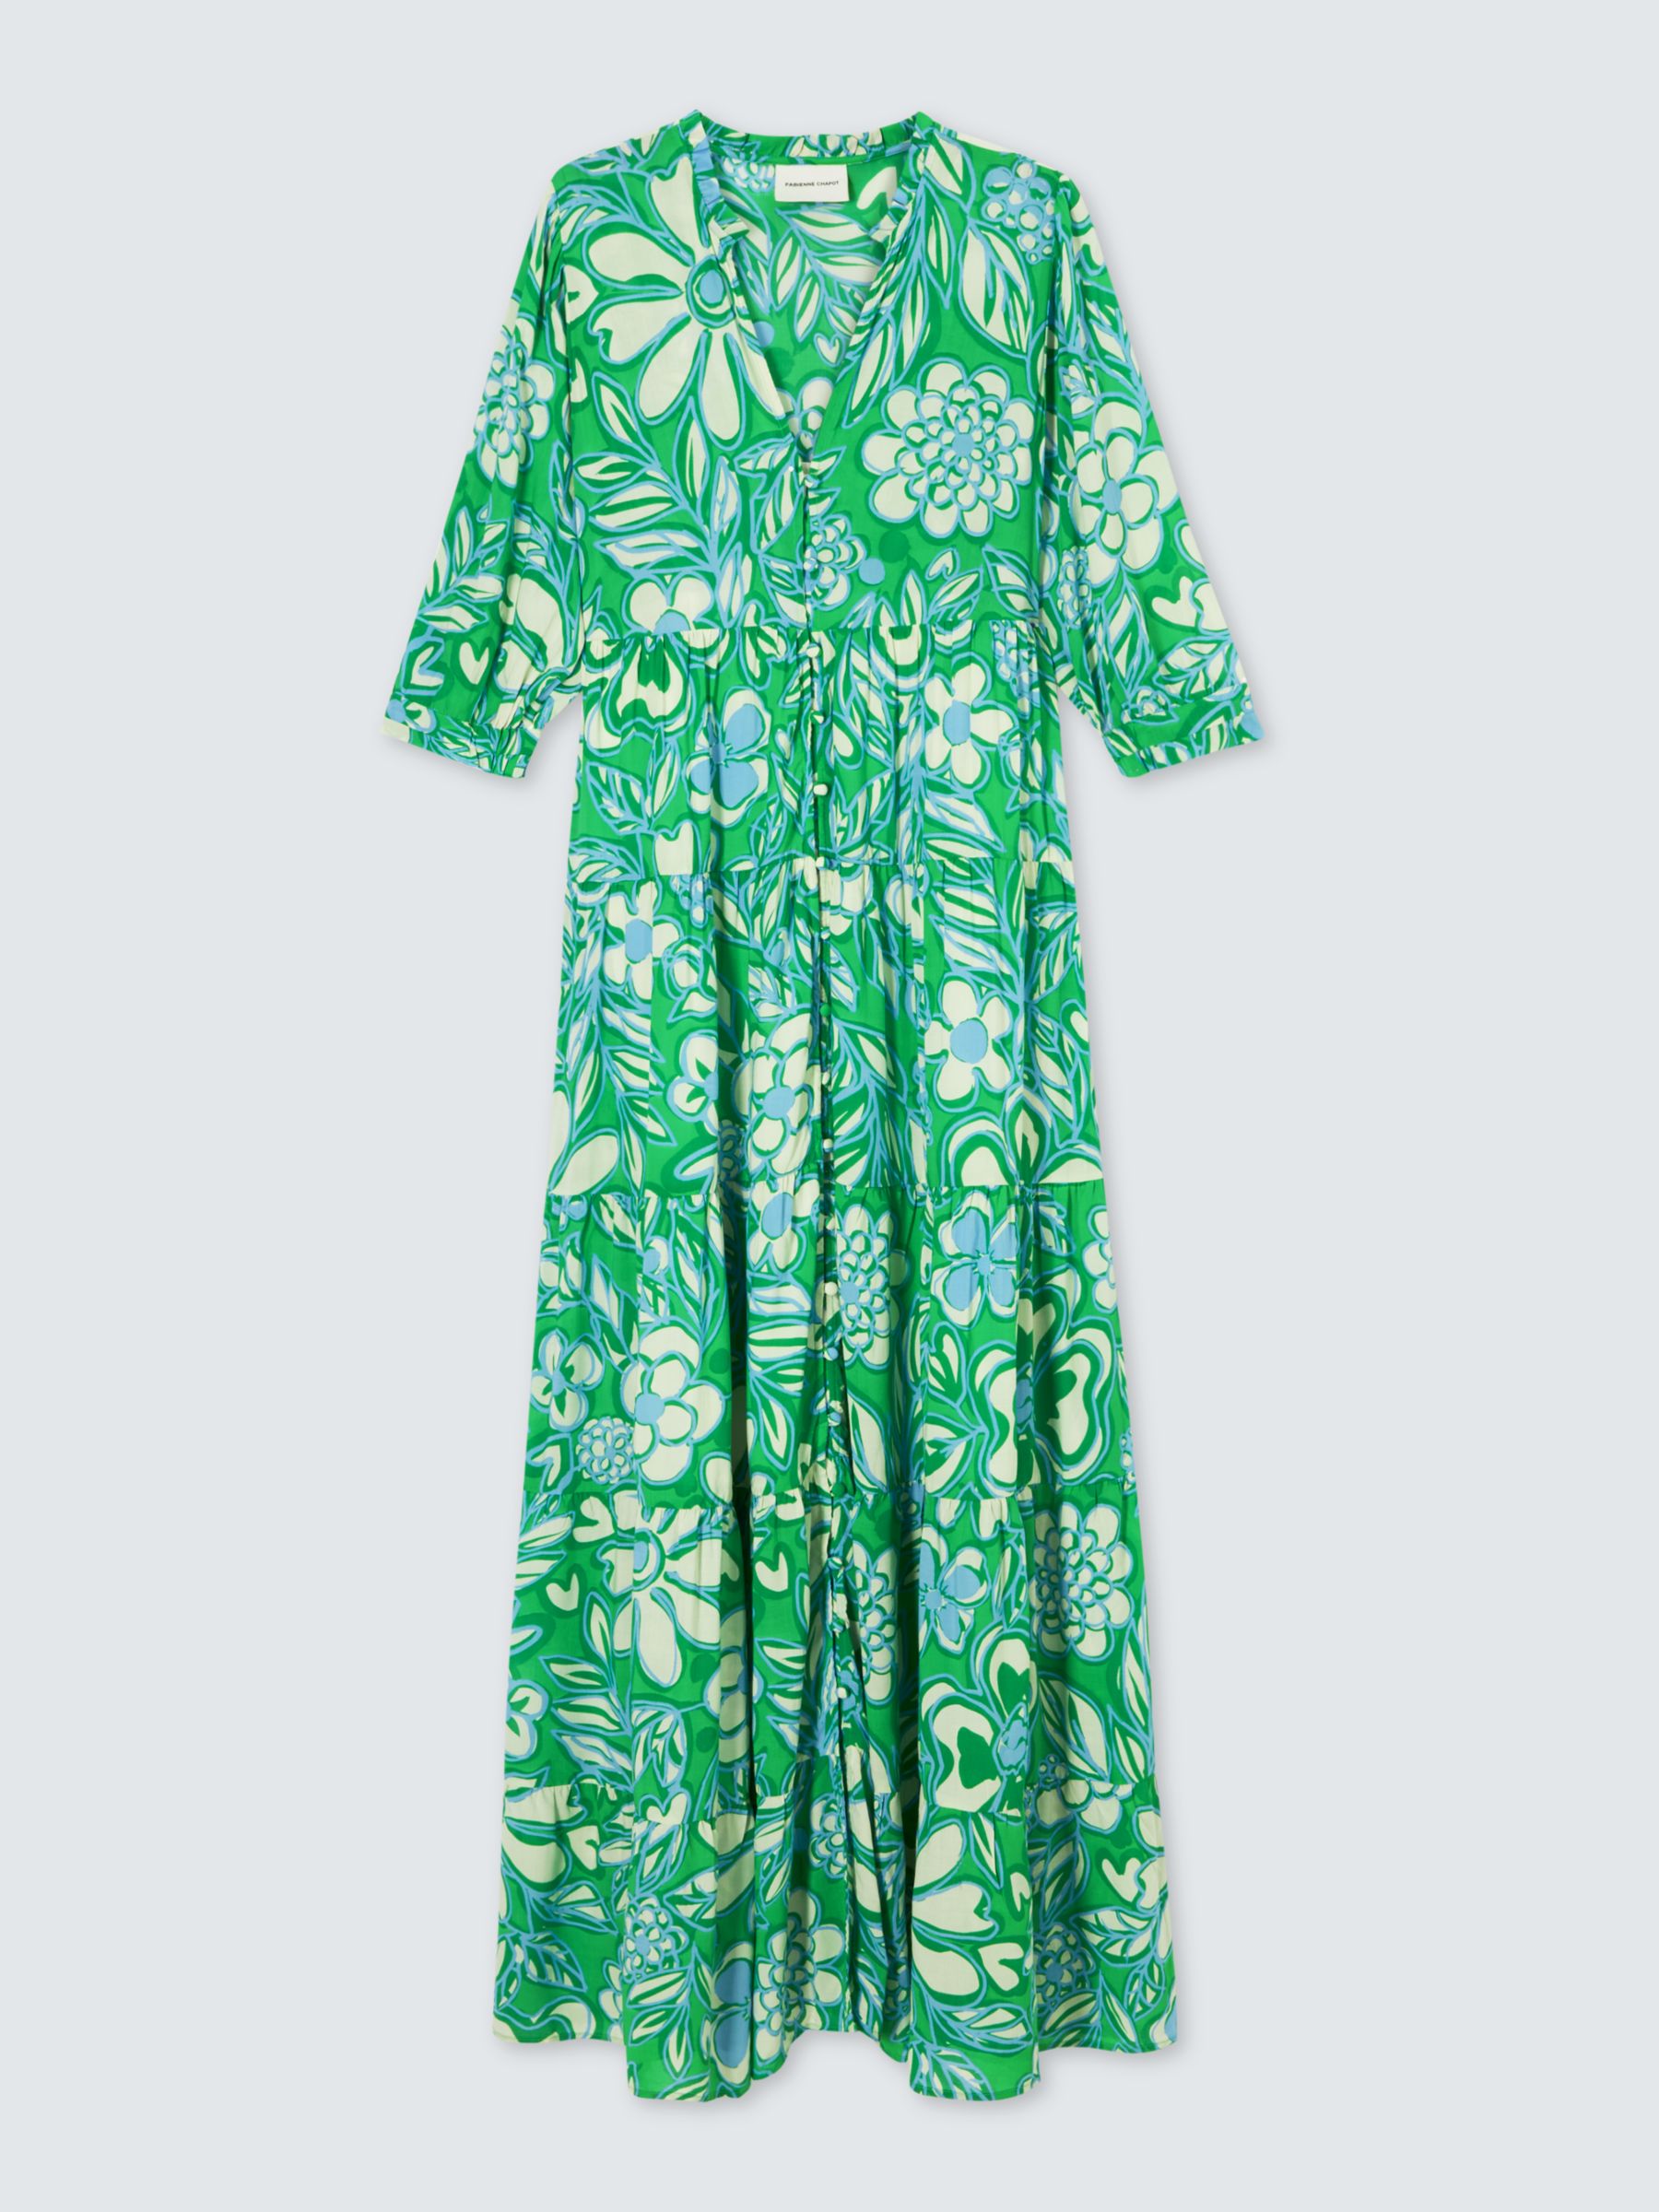 Fabienne Chapot Cala Floral Print Maxi Dress, Green Apple/Grass, 34